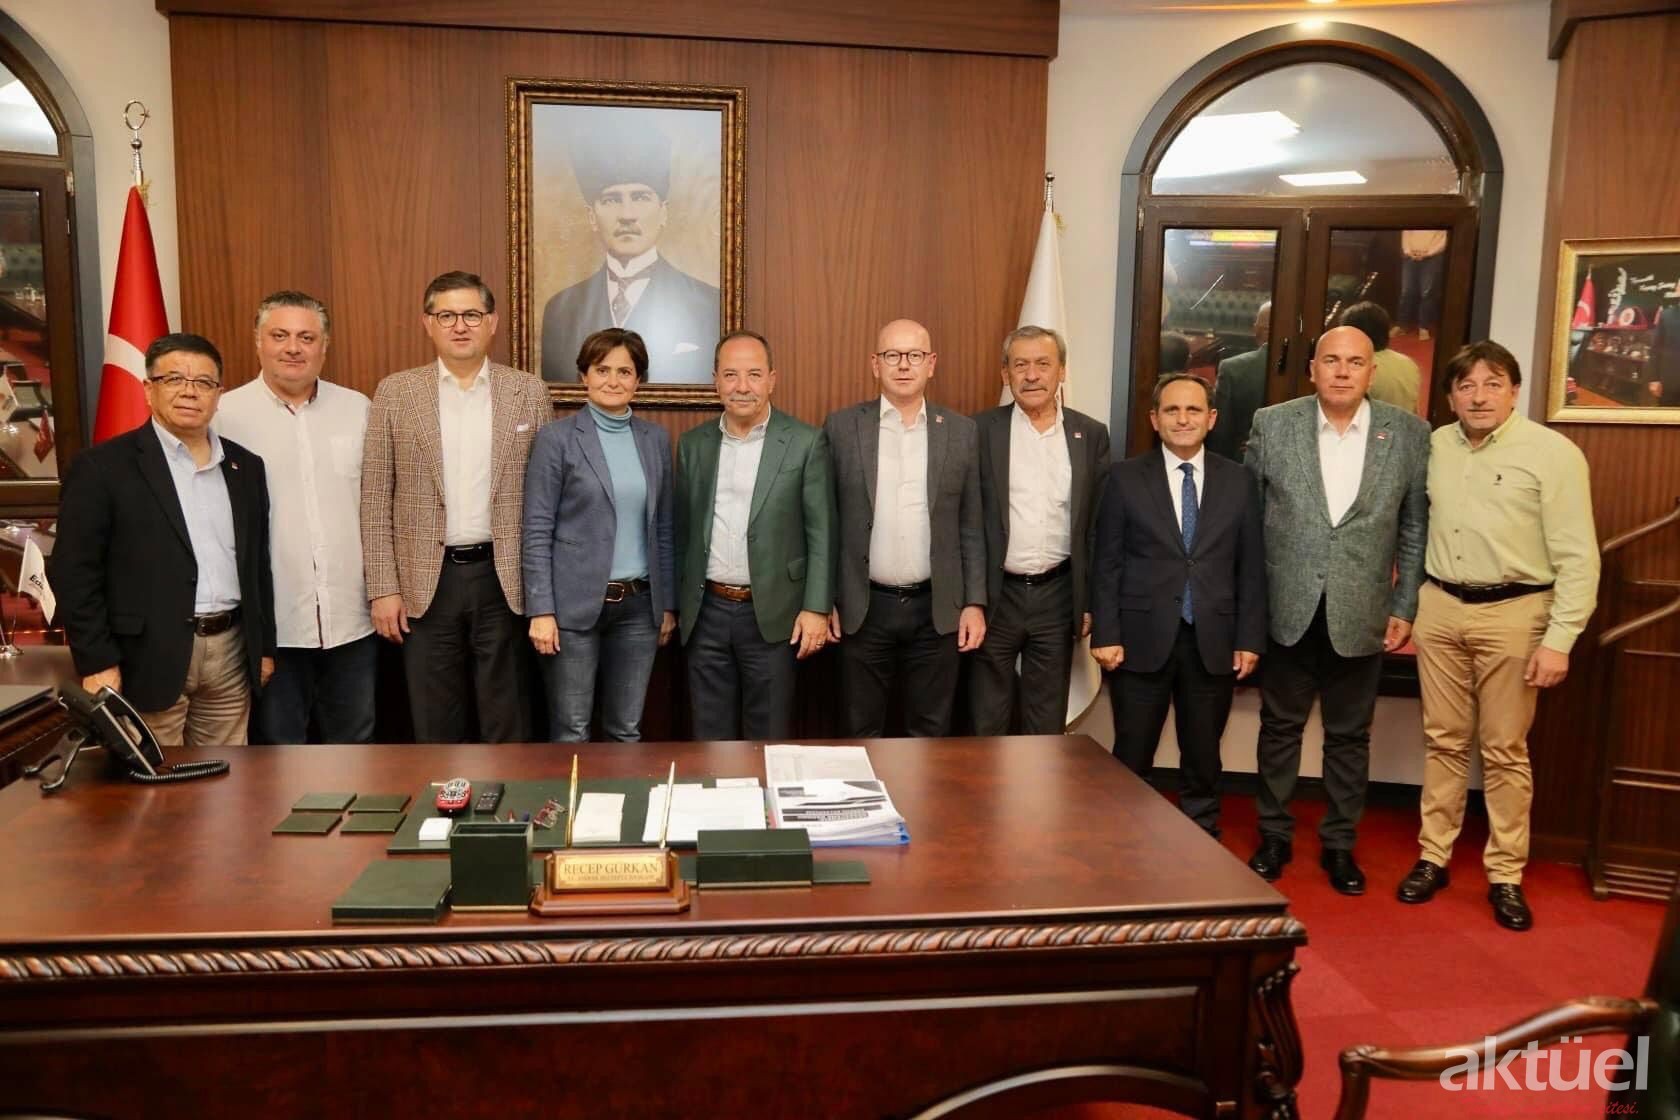 CHP’de İl Başkanları Edirne’de Toplandı